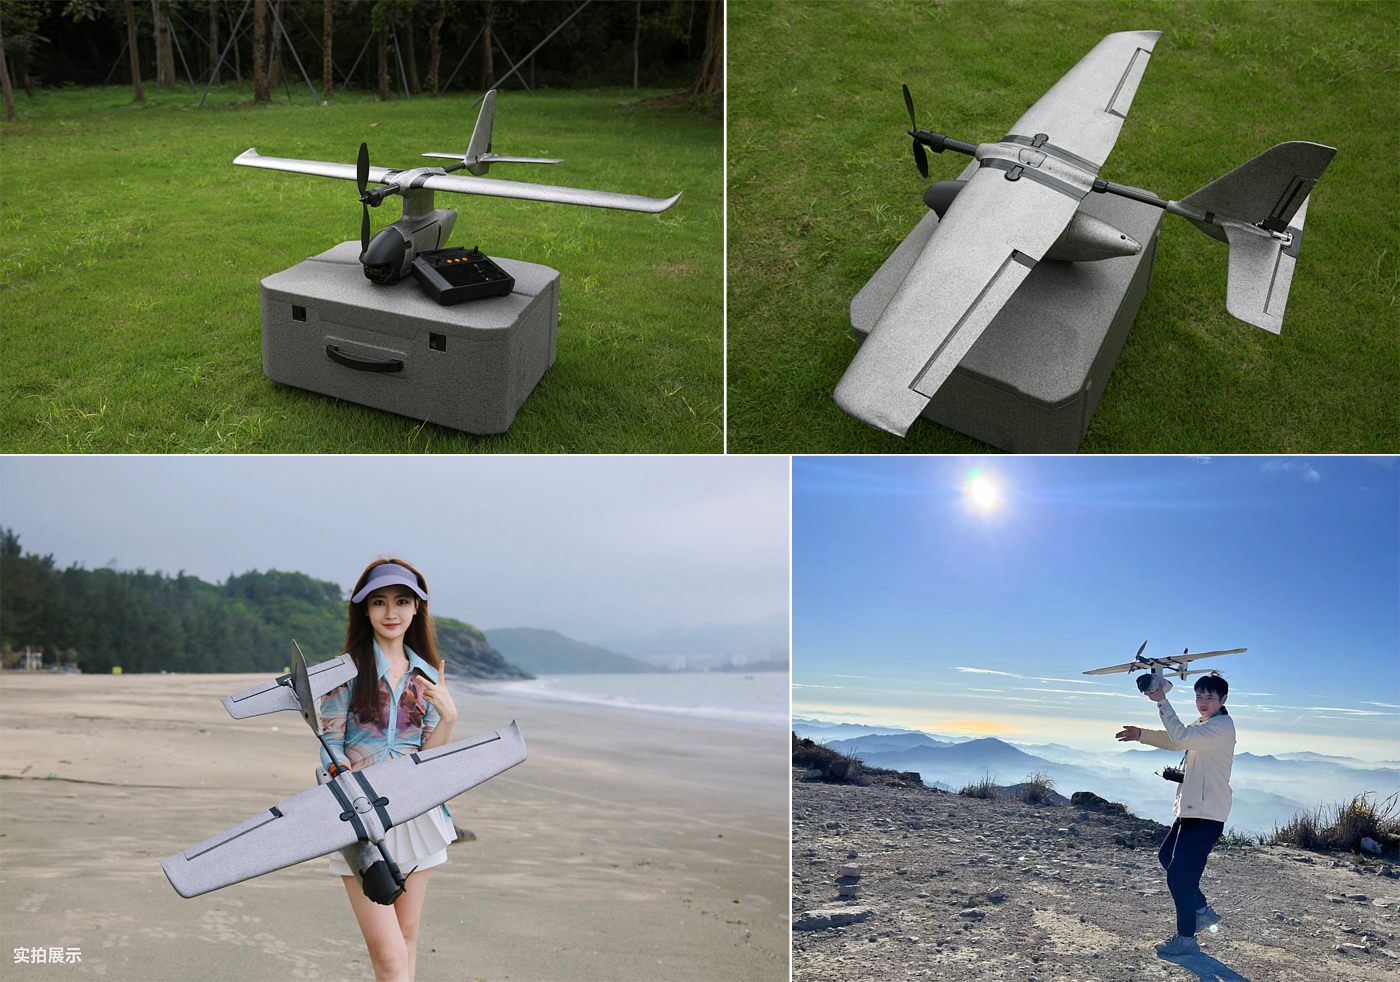 DJI，FPV，无人机，固定翼，航模，穿越机，摄影，科技感，